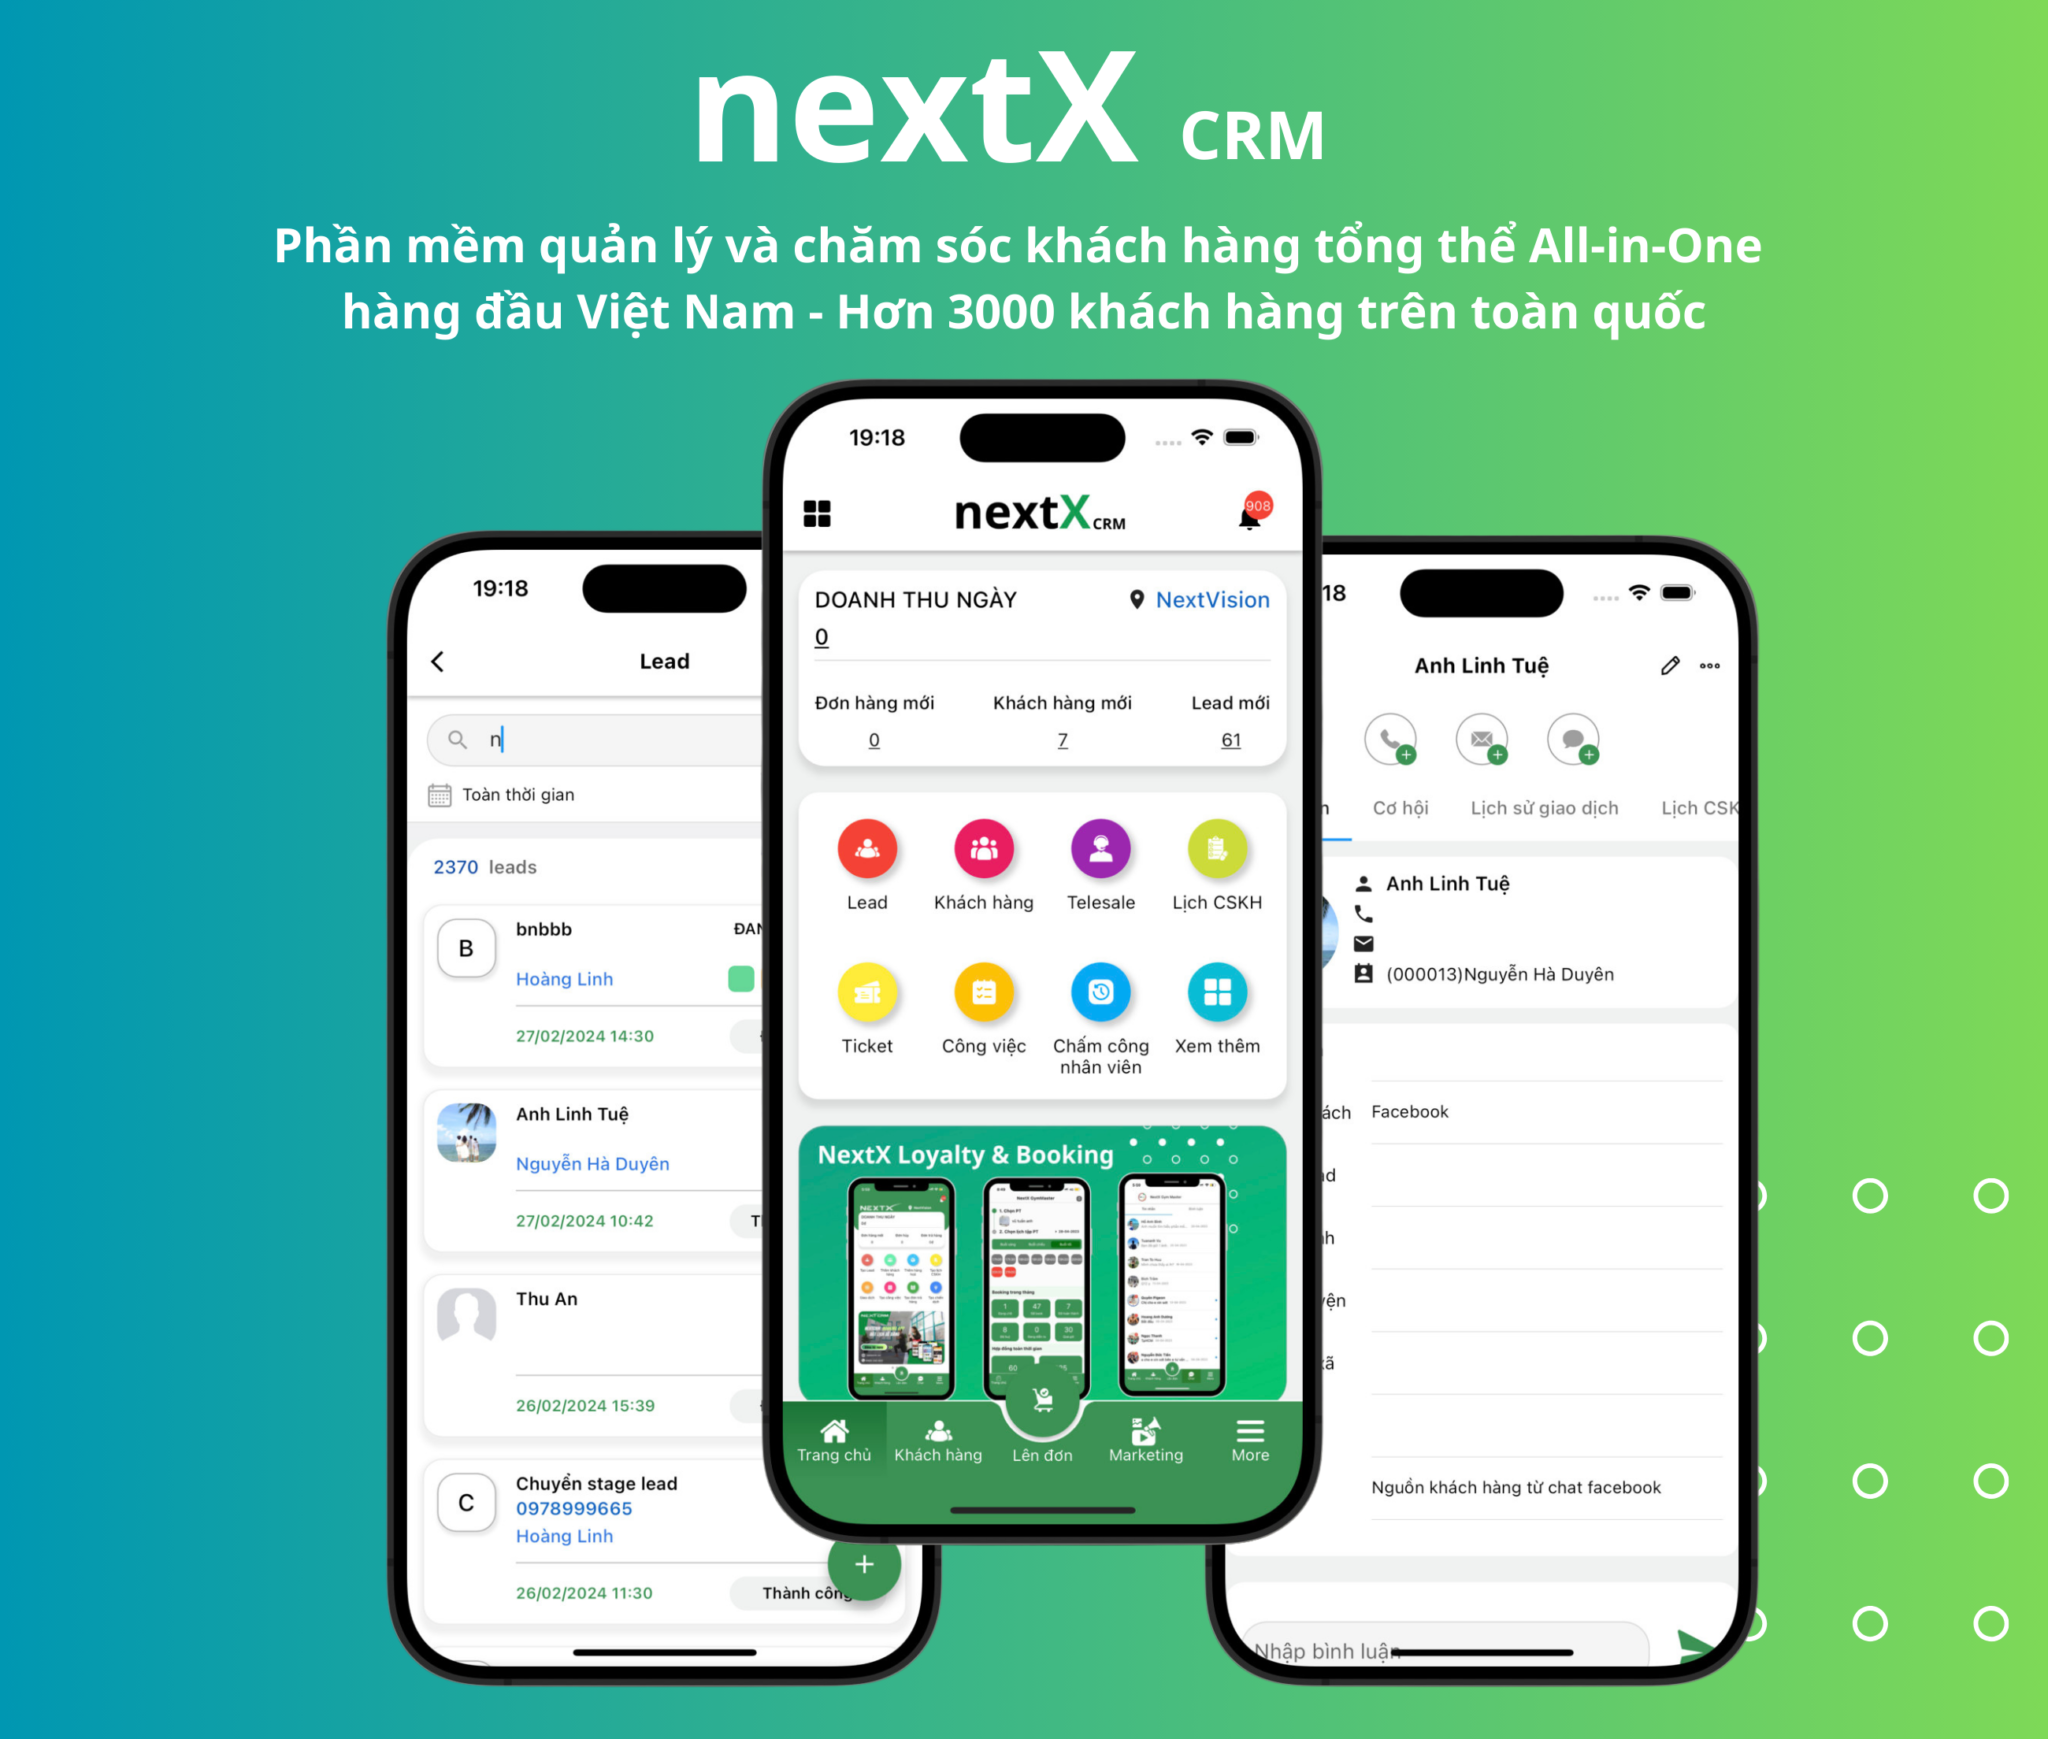 Phần mềm quản lý và chăm sóc khách hàng NextX CRM